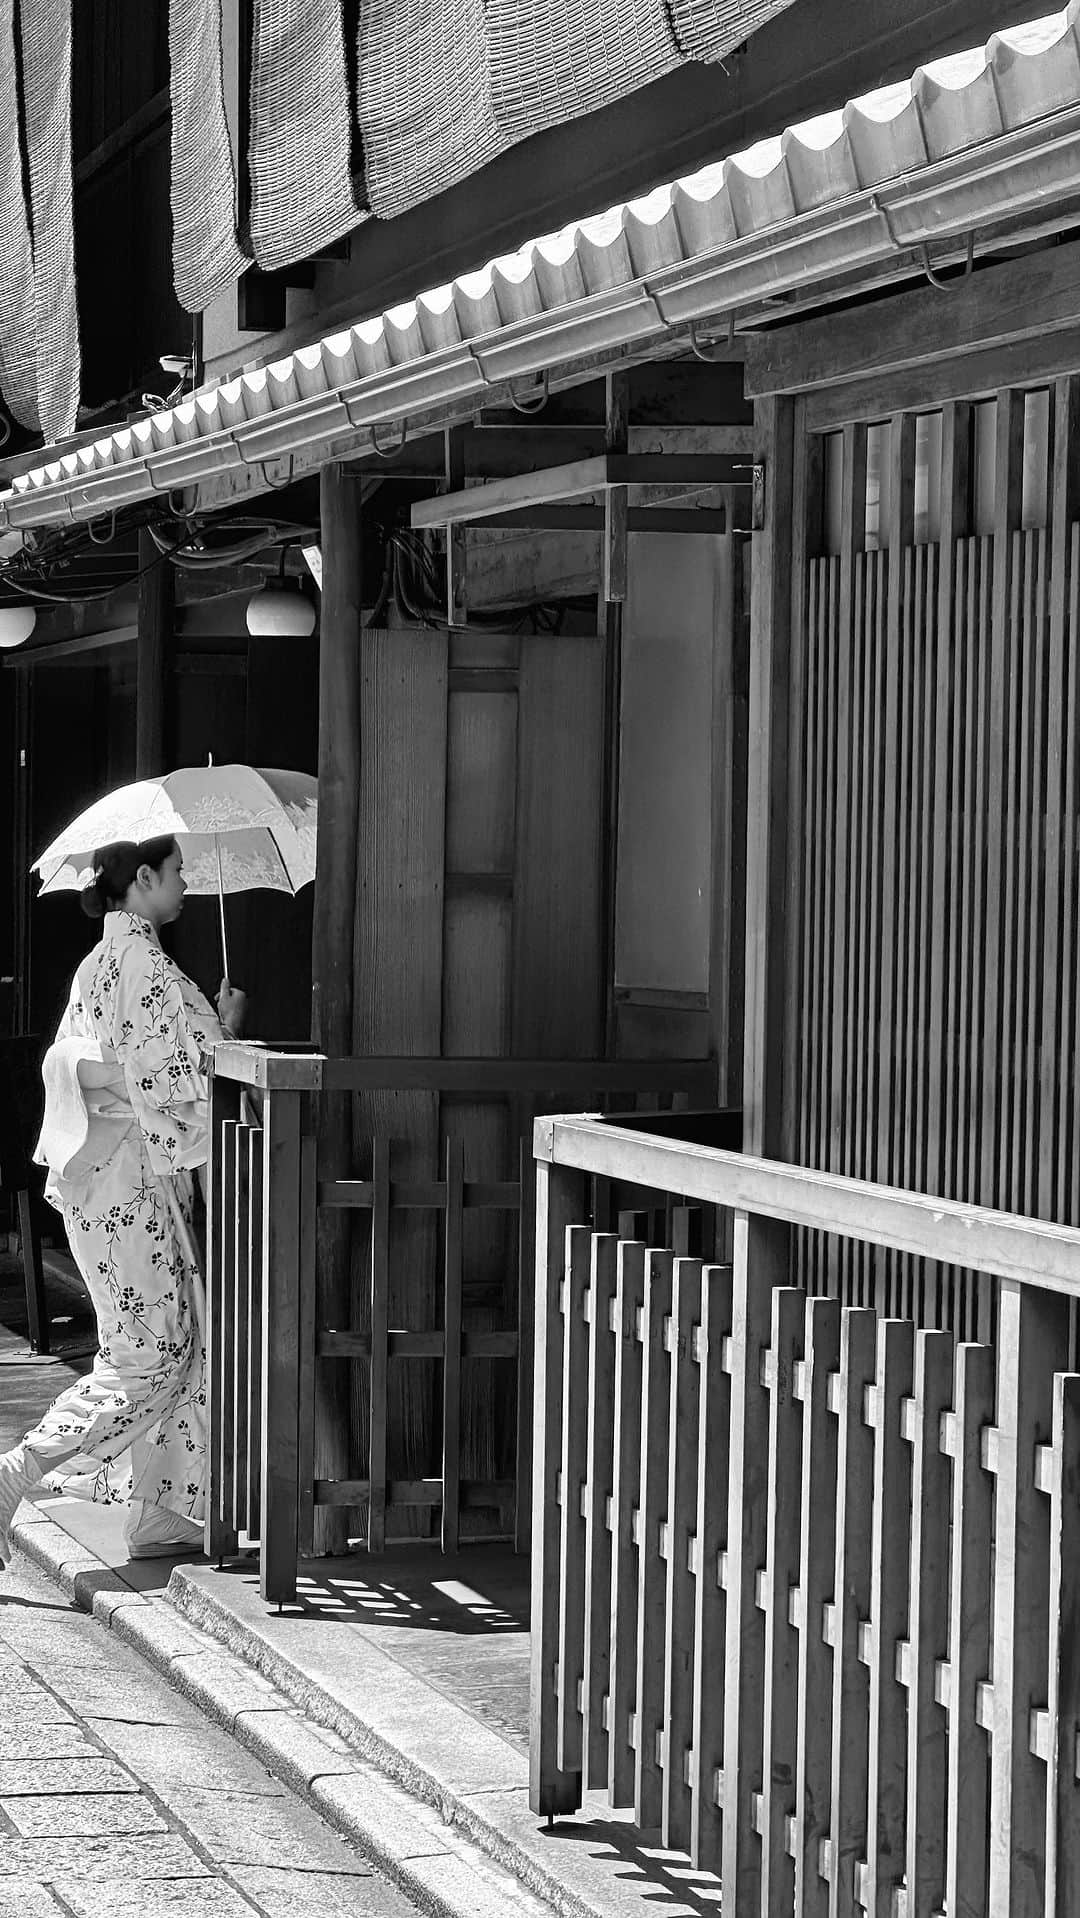 大塚良子のインスタグラム：「京都の美味しいお店リスト🍽️ List of Good restaurants in Kyoto. 先週末に東京へ移り、 夏風邪なのか昨日は一日ダウン 京都の美味しいお店をまとめたので 良かったら参考にして下さい。  ⚪︎広東御料理 竹香　@giontakeka  祇園四条より徒歩5分 1966年創業 京都らしい上品で優しい中華 リーズナブルなのも嬉しい  ⚪︎広東料理 ぎをん森幸　 Gion Morikoh  アラカルトはもちろん ランチ時にお手頃に食べられる 美味しいが詰まったお弁当が好き  ⚪︎祇園ろはん　Gion Rohan  祇園四条から歩いてすぐ 店主さんは京都を代表する名店 「室町和久傳」「菊乃井」出身 子供OKなのも嬉しい 名物は食べ損ねたけど、 旬の食材を使ったお料理がどれも美味しく、 担当してくれた方がニューヨークの　 kajitsuにいらしたことがあったそうでビックリ  ⚪︎嵐山　PIZZERIA MAMA (儘) @mama_arashiyama_  素敵な邸宅の開放的なレストラン 九条ネギとシラスのPizzaをはじめ どのピザもアラカルトもとっても美味しくて また必ず行きたいお店  ⚪︎イタリアン　ヴェーナ @vena.kyoto  先日投稿した丸太町にあるイタリアン ヴェーナ 個室なら子供OKなのが嬉しい 野菜をふんだんに使ったお料理はどれも美味しかった。　  ⚪︎ 本家尾張屋 @honkeowariya  なんと創業550年を超える老舗 京都へ行ったら必ず行くお蕎麦屋さん お蕎麦の後は隣接する菓子処へ是非立ち寄って欲しい。 @honkeowariya_kashi  蕎麦チャイがまた絶品です。  ⚪︎suba @subasoba  何人かの友人やフォロワーさんから勧められた自家製麺立ち食い蕎麦店。店内は大きな石のテーブルがどーんと二つあるのみ。味はもちろん美味しく、色々と概念を覆すお店 動画はこちら  ⚪︎鰻　かね正  今回は残念ながら行けなかったお店 路地裏を抜けひっそり佇む美味しい鰻屋さん 次回はぜひ行きたい  ⚪︎鰻　京極　かねよ  どーんと布団のように乗った卵の下から 香ばしく美味しい鰻が登場 子供サイズもあり  ⚪︎ BAR K家　別館　 今回は残念ながら行けなかったけど 京町家をリノベしたお店は雰囲気も良く カクテルもとても美味しかった  ⚪︎蛸長　おでん　 先日投稿した老舗のおでん屋さん 裏メニューも欠かさず食べてほしい上品なおでん屋さん  以下はお友達と夫のお友達に聞いた 行きたかったお店リスト  ⚪︎チェンチ　Cenci @cenci.kyoto  今をときめくイタリアンのお店だそう 行きたかったけど子供がNGで残念涙  ⚪︎とり料理　瀬戸 SETO  まさかそんなに人気とは知らず 電話したときには2カ月先までいっぱいだった 一日三組限定の囲炉裏を囲む、とり料理屋さん 目の前のお庭で子供も自由に遊ばせてくれるそうなので 次回は行けたらいいなあ  ⚪︎京中華　牧定　@maki_sada  インスタで見つけて行きたいと思ってた高級中華。 次回はトライしたい  ⚪︎焼肉　江畑　EBATA 生でいただけるホルモンはじめ コスパ良し味良しのお店とか  ⚪︎ 食堂えびちゃん　@shokudoebichan  京都河原町にあるカウンター10席のお店 名店　食堂おがわのお弟子さんが開いたお店だそう。普通に入れるのかなあ  ⚪︎ 日本料理 研野 @sakai_kenya  店主さんは菊乃井で修行をされた方 子なしでゆっくりお伺いしたいお店  ⚪︎ 赤垣屋　Akagakiya  京都の老舗 酒場 オープンからすぐに満席になるとか 次回は是非いってみたい  ⚪︎ おでんと釜飯 ムロ @odenmuro  コスパ抜群のオシャレなおでん屋さん 予約必須の人気店とか  ⚪︎鳥さき @torisaki_kyoto  目黒の名店「鳥しき」イズムを継承する焼鳥屋 次回は絶対いきたいお店  ⚪︎酒場 井倉木材 @sakaba_ikuramokuzai  昼は木材屋さんで夜は居酒屋になるんだそう 何ともユニークな立ち飲み屋  ⚪︎天ぷら　だるきん　Tempura Darukin カウンター7席の天ぷら どの写真を見ても新鮮な食材と軽そうな衣 行きたかったなあ  ⚪︎神馬 @shinme_kyoto  京都三大名酒場の一つ 酒場といえど一流割烹のお味だそう  ⚪︎ LE UN(ルアン) フランス料理 特徴テラス席ありの一軒家 景色が綺麗で夜景が見える子供連れOKのお店 夏の風物詩　川床を楽しめる京フレンチ  ⚪︎ ザ　コモンワン バー　キョウト The Common One Bar Kyoto 京都らしさが詰まった祇園の町家BAR ホスピタリティも素晴らしい  ⚪︎ Kyotenjin Noguchi (京天神 野口) 予約困難な京懐石のお店  ⚪︎ 食堂 みやざき 食堂おがわで修行をされた方が独立したお店。 新規は受付てないそうなので常連さんに 連れて行ってもらうのが良いそう  などなど他にも幾つか教えてもらったんですが京都は美味しいお店があり過ぎて一生かかっても廻れなそう😋」